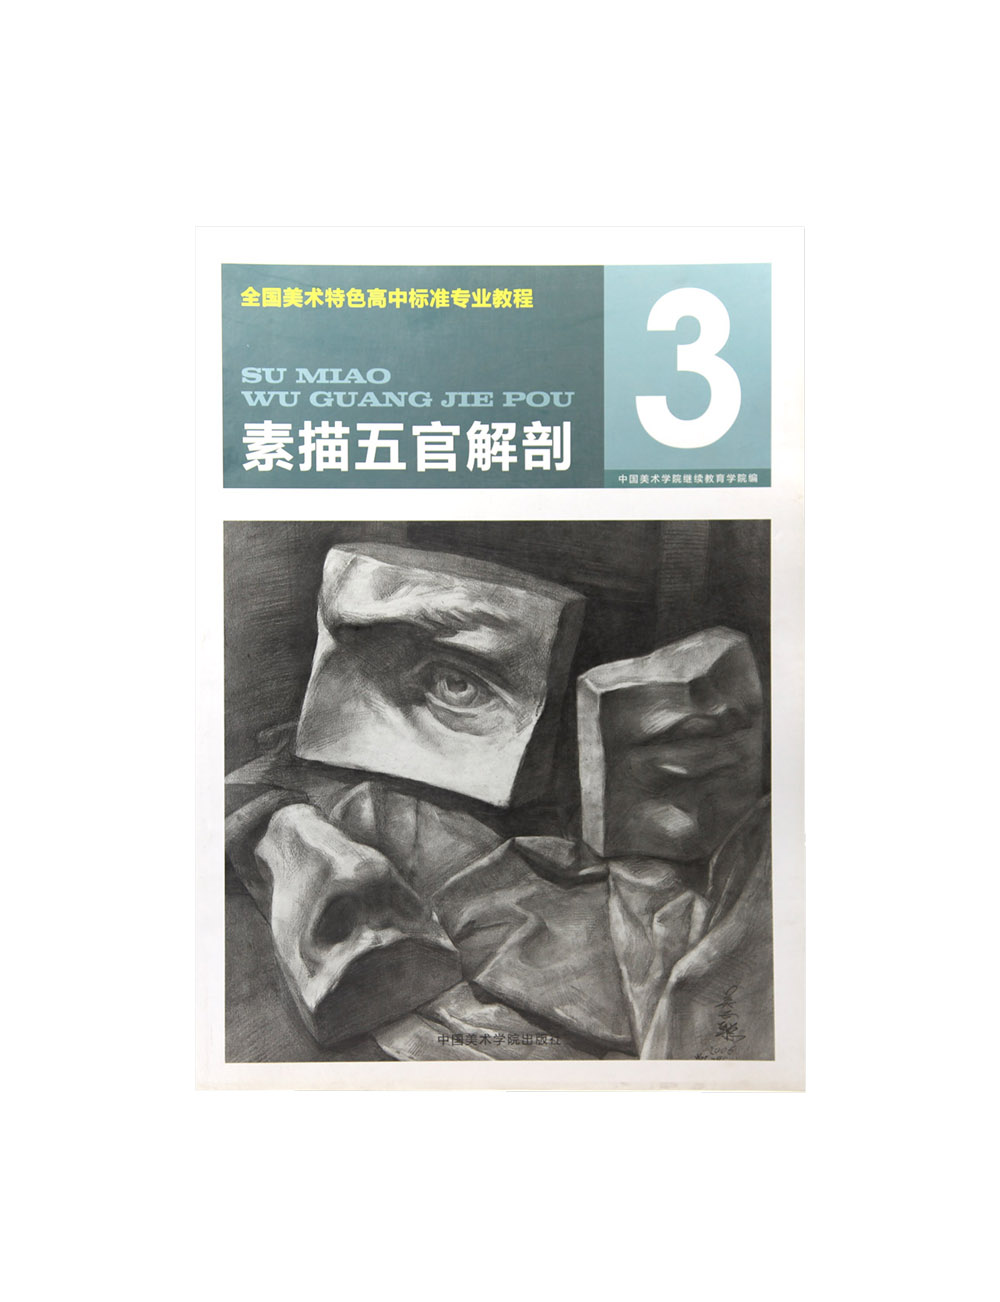 《美术特色高中标准专业教程//素描五官解剖》中国美术学院 正版品牌直销 满58包邮